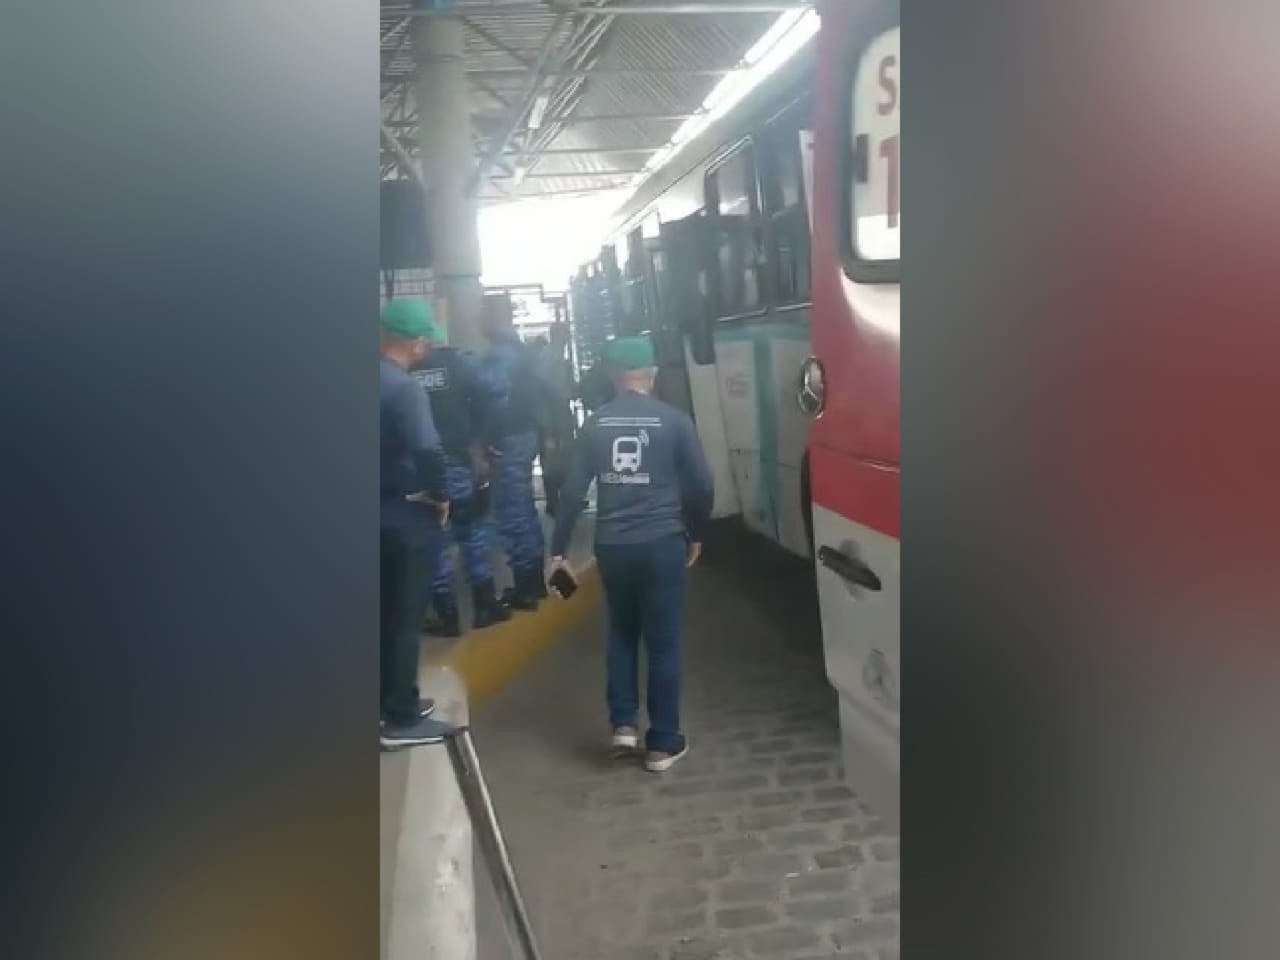 Passageira morre imprensada entre ônibus e grade em terminal de Fortaleza